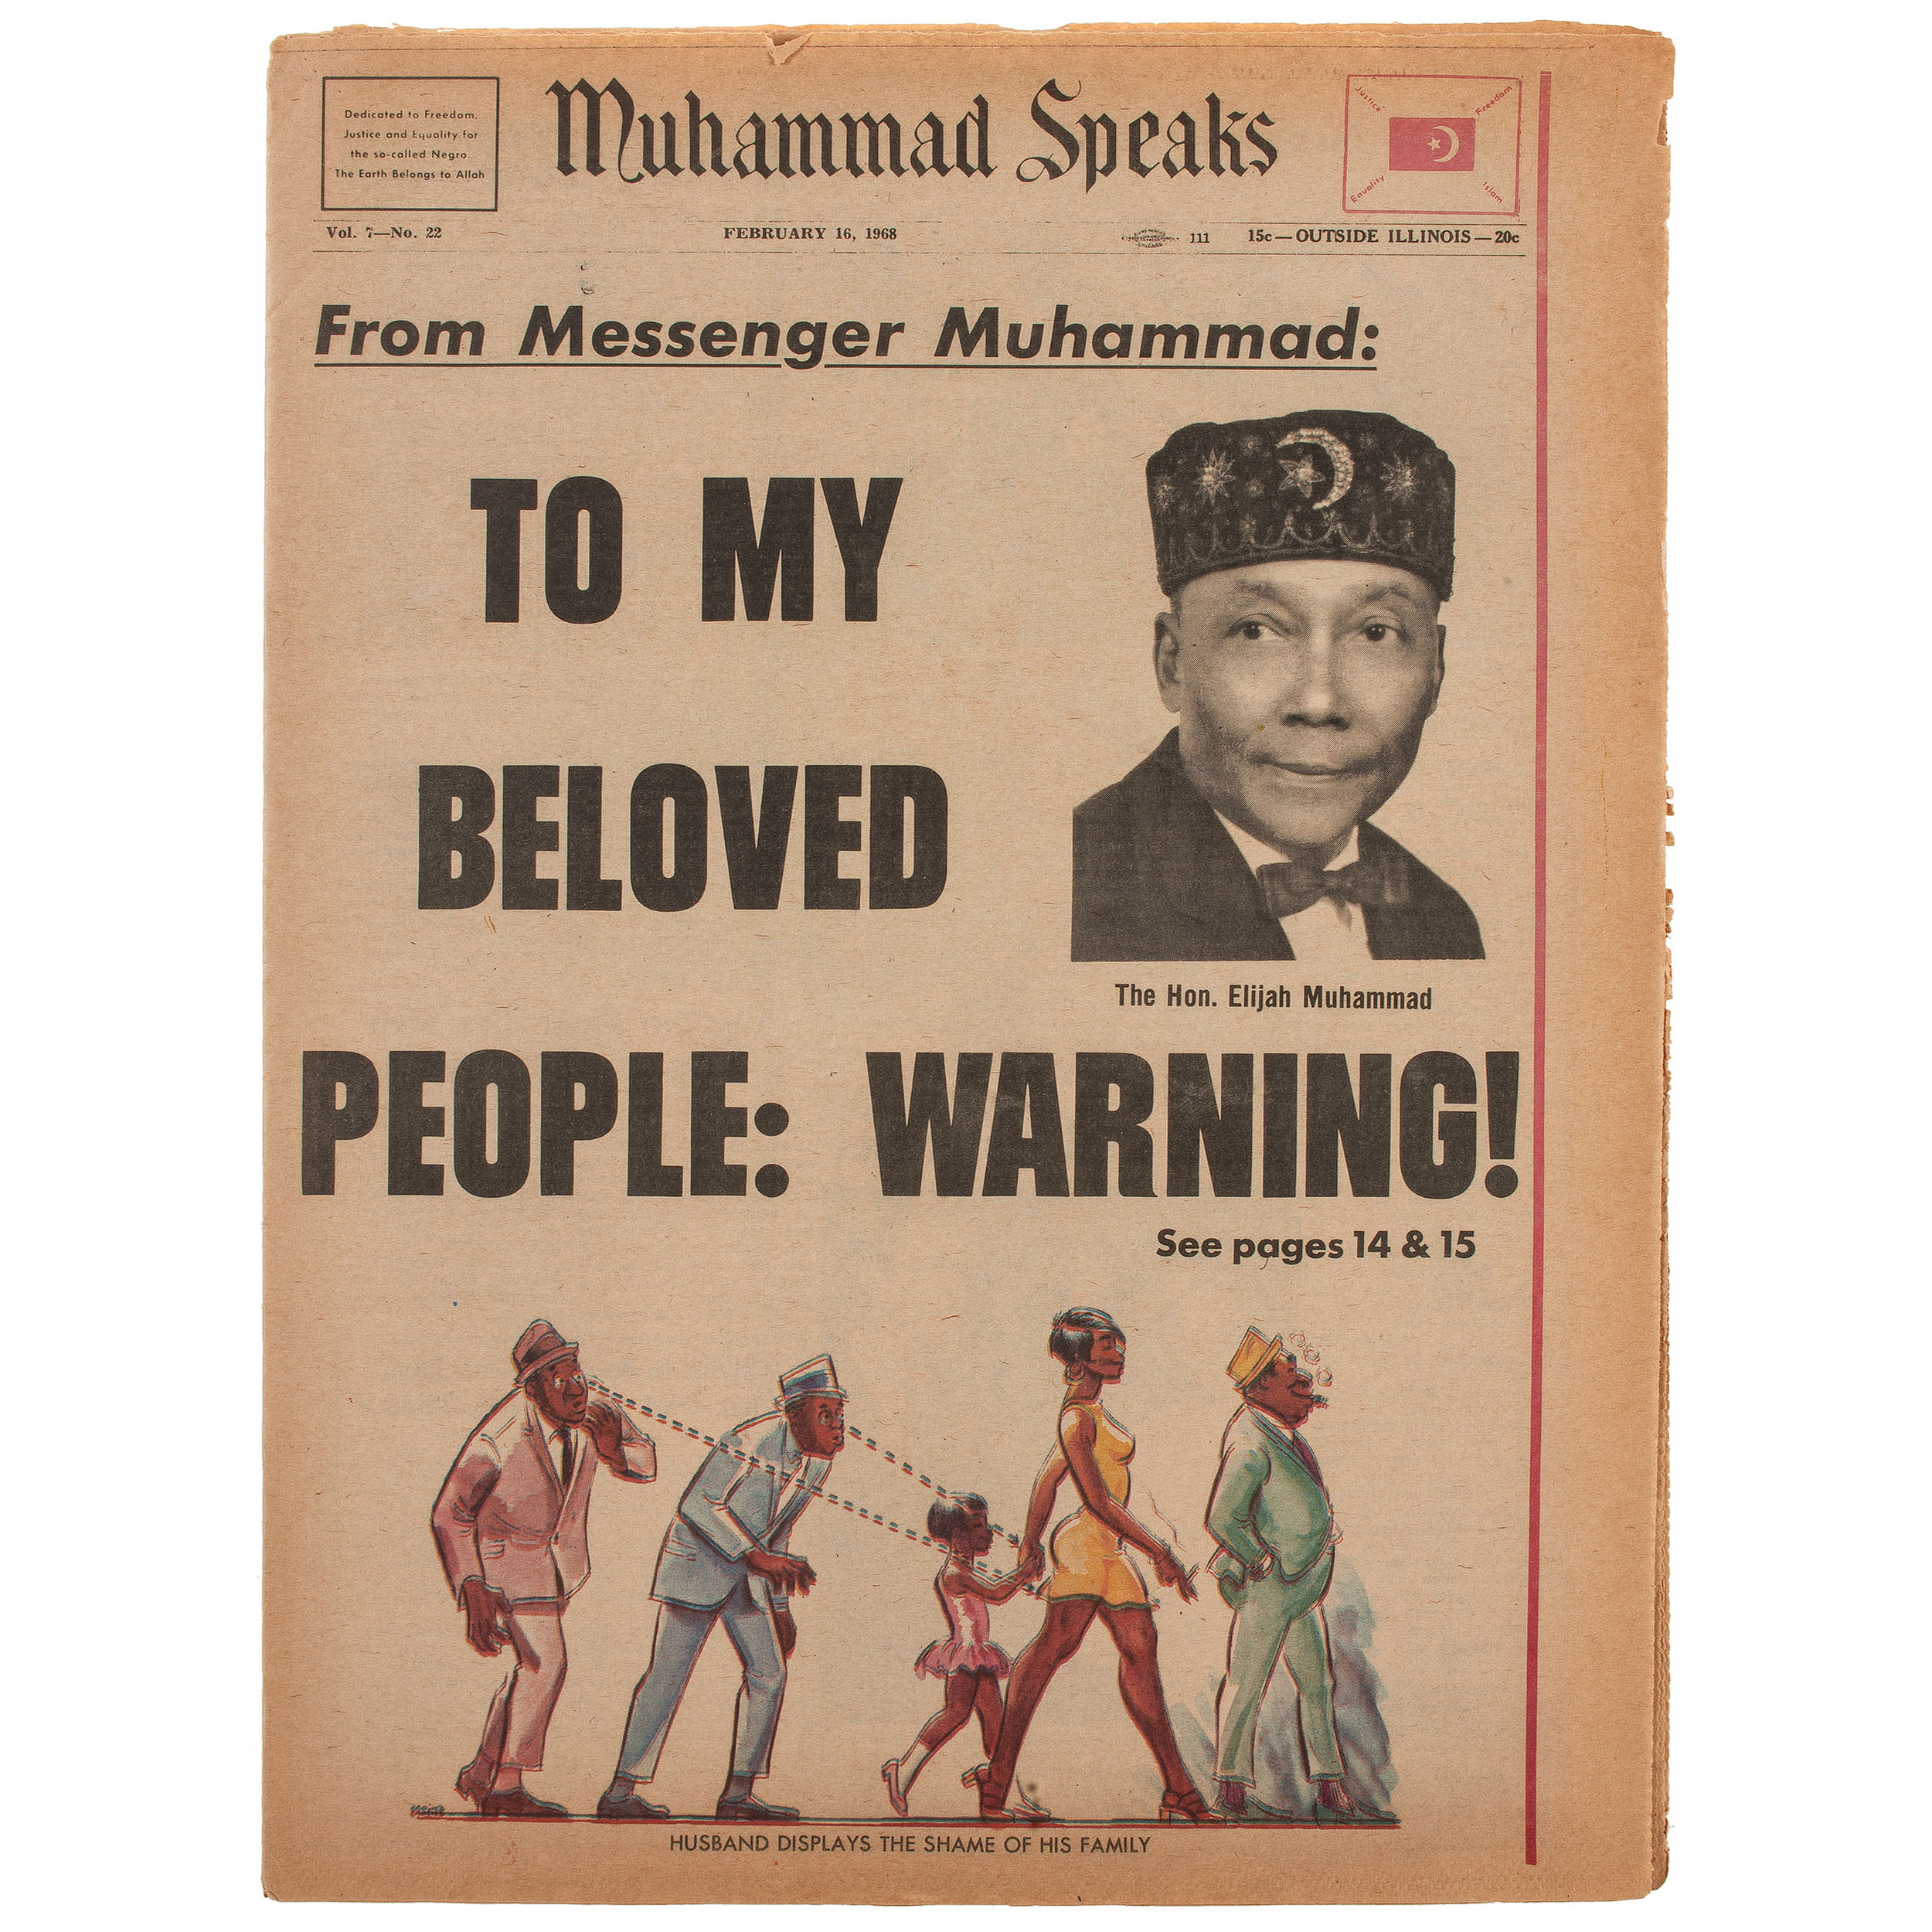 Elijah Muhammad warning to his people